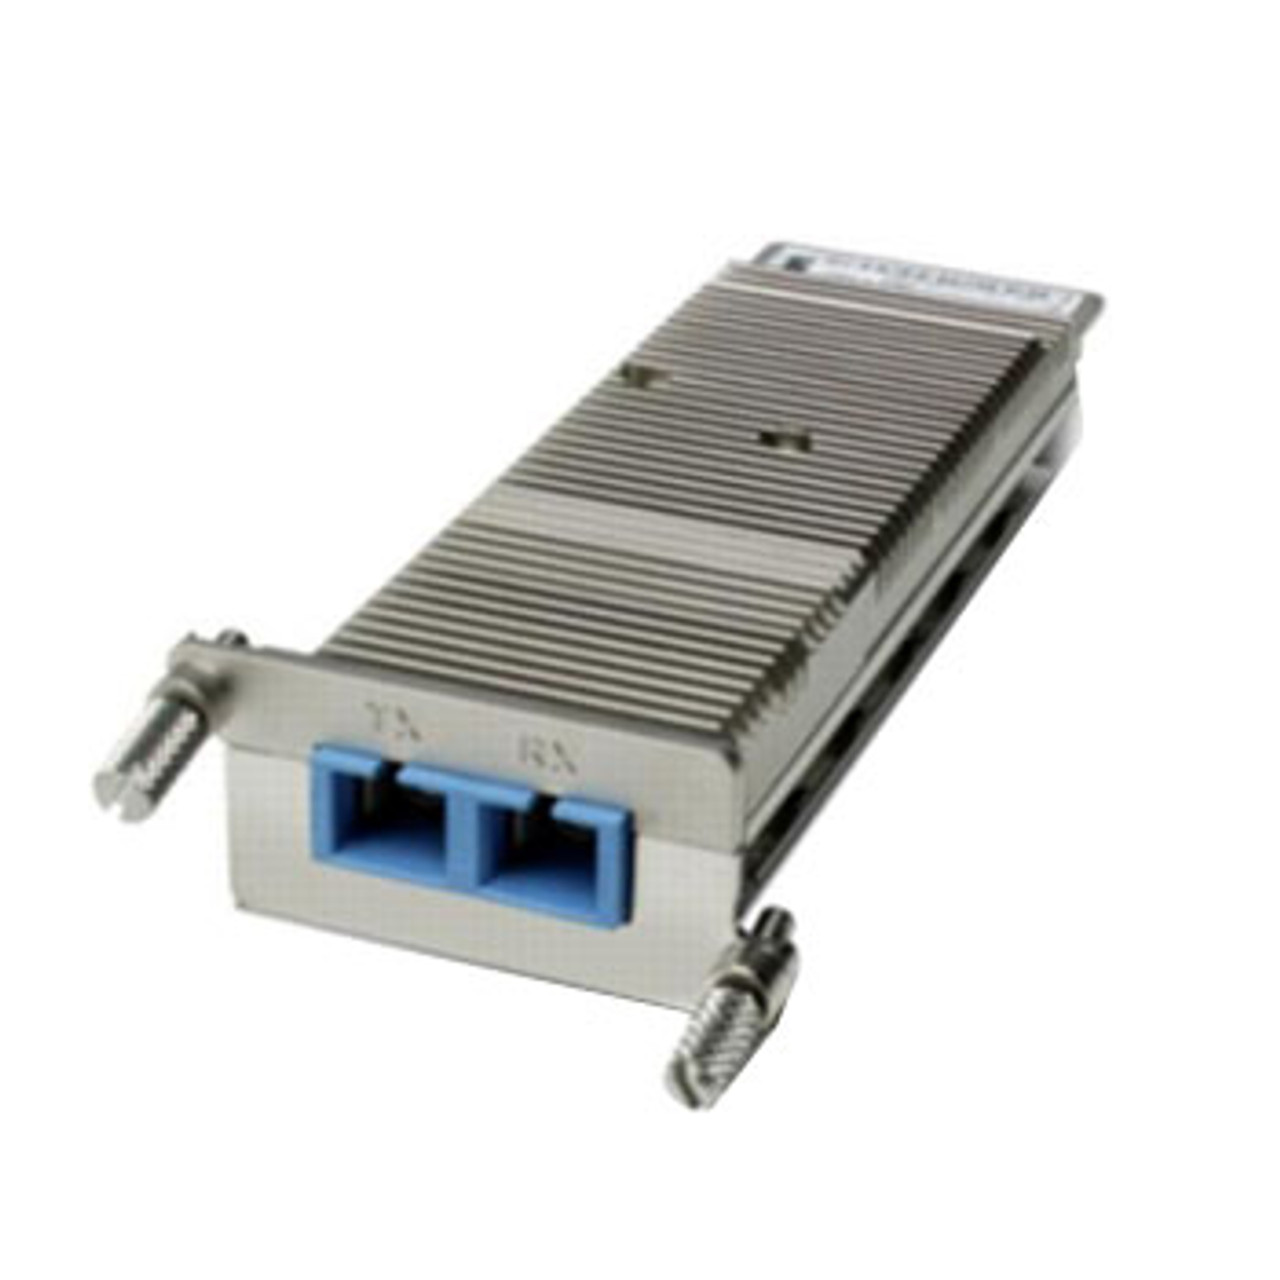 XENPAK-10GB-LX4= Cisco 10Gbps 10GBase-LX4 Multi-mode Fiber 300m 1310nm Duplex SC Connector XENPAK Transceiver Module (Refurbished)